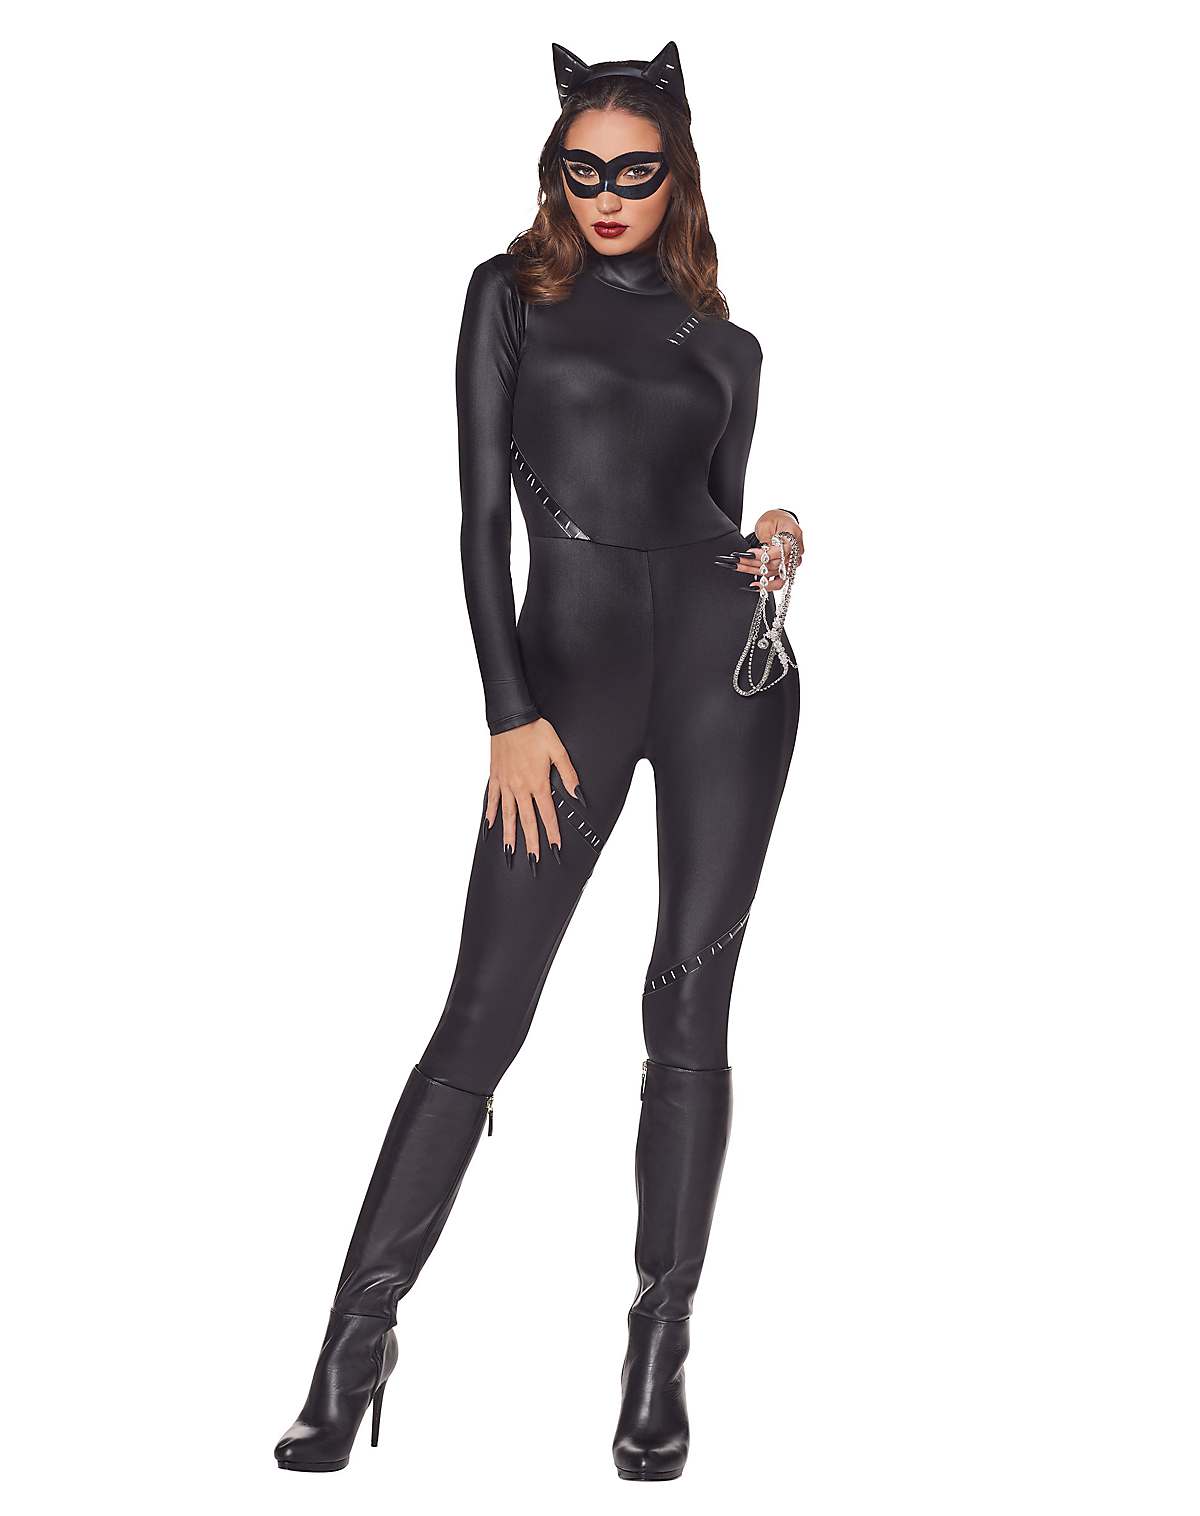 Adult Catwoman Catsuit Costume - DC Villains
